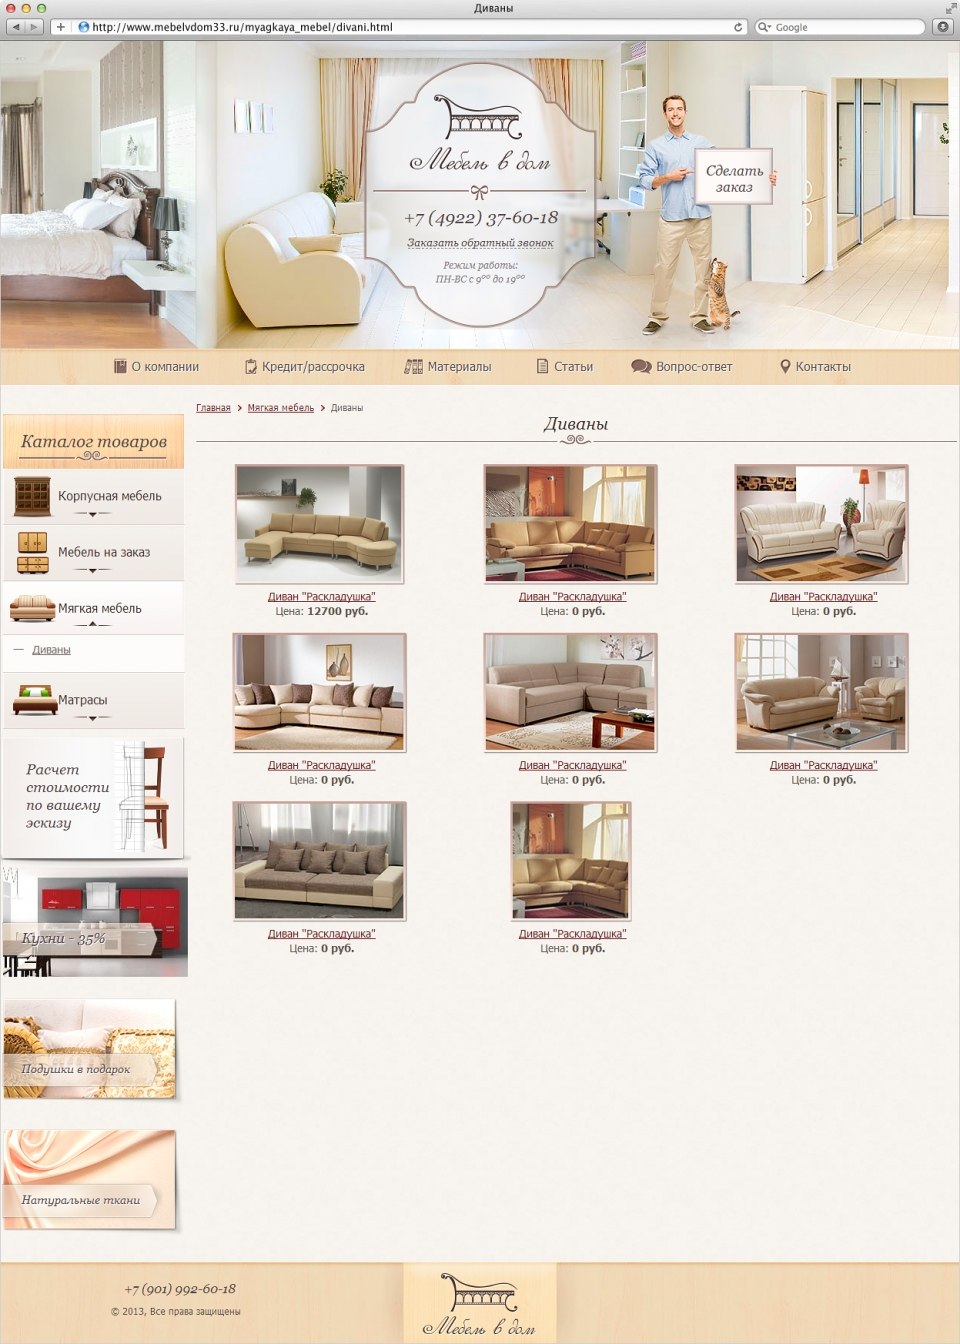 Сайт компании "Мебель в дом" - поставщика корпусной и мягкой мебели 2